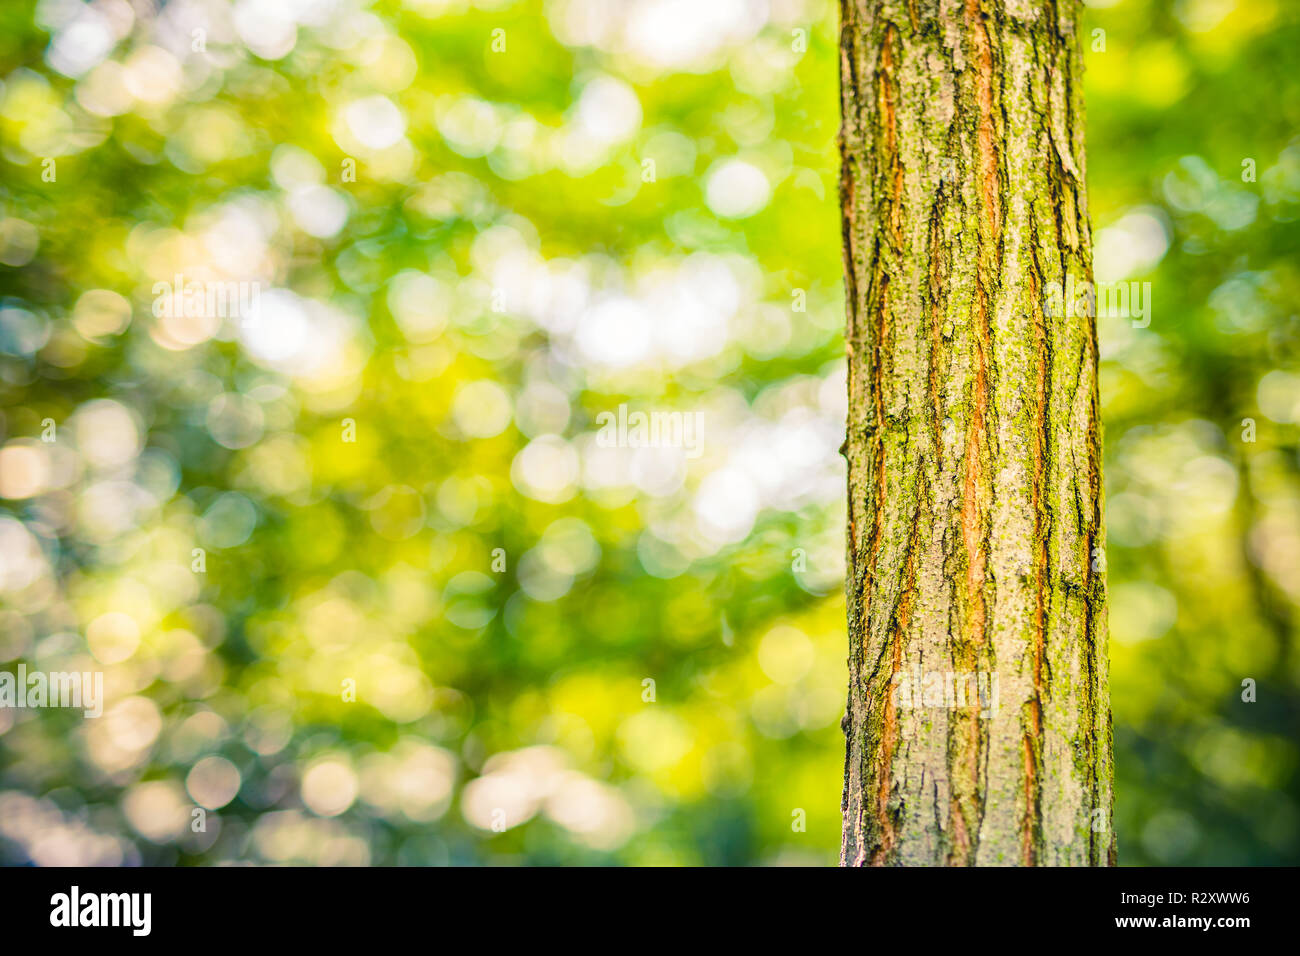 Vân gỗ tự nhiên xanh tươi kết hợp với phông nền cây xanh mờ nhạt và hạt bokeh tạo nên một hình ảnh hoàn hảo cho phông nền của thiết bị của bạn.